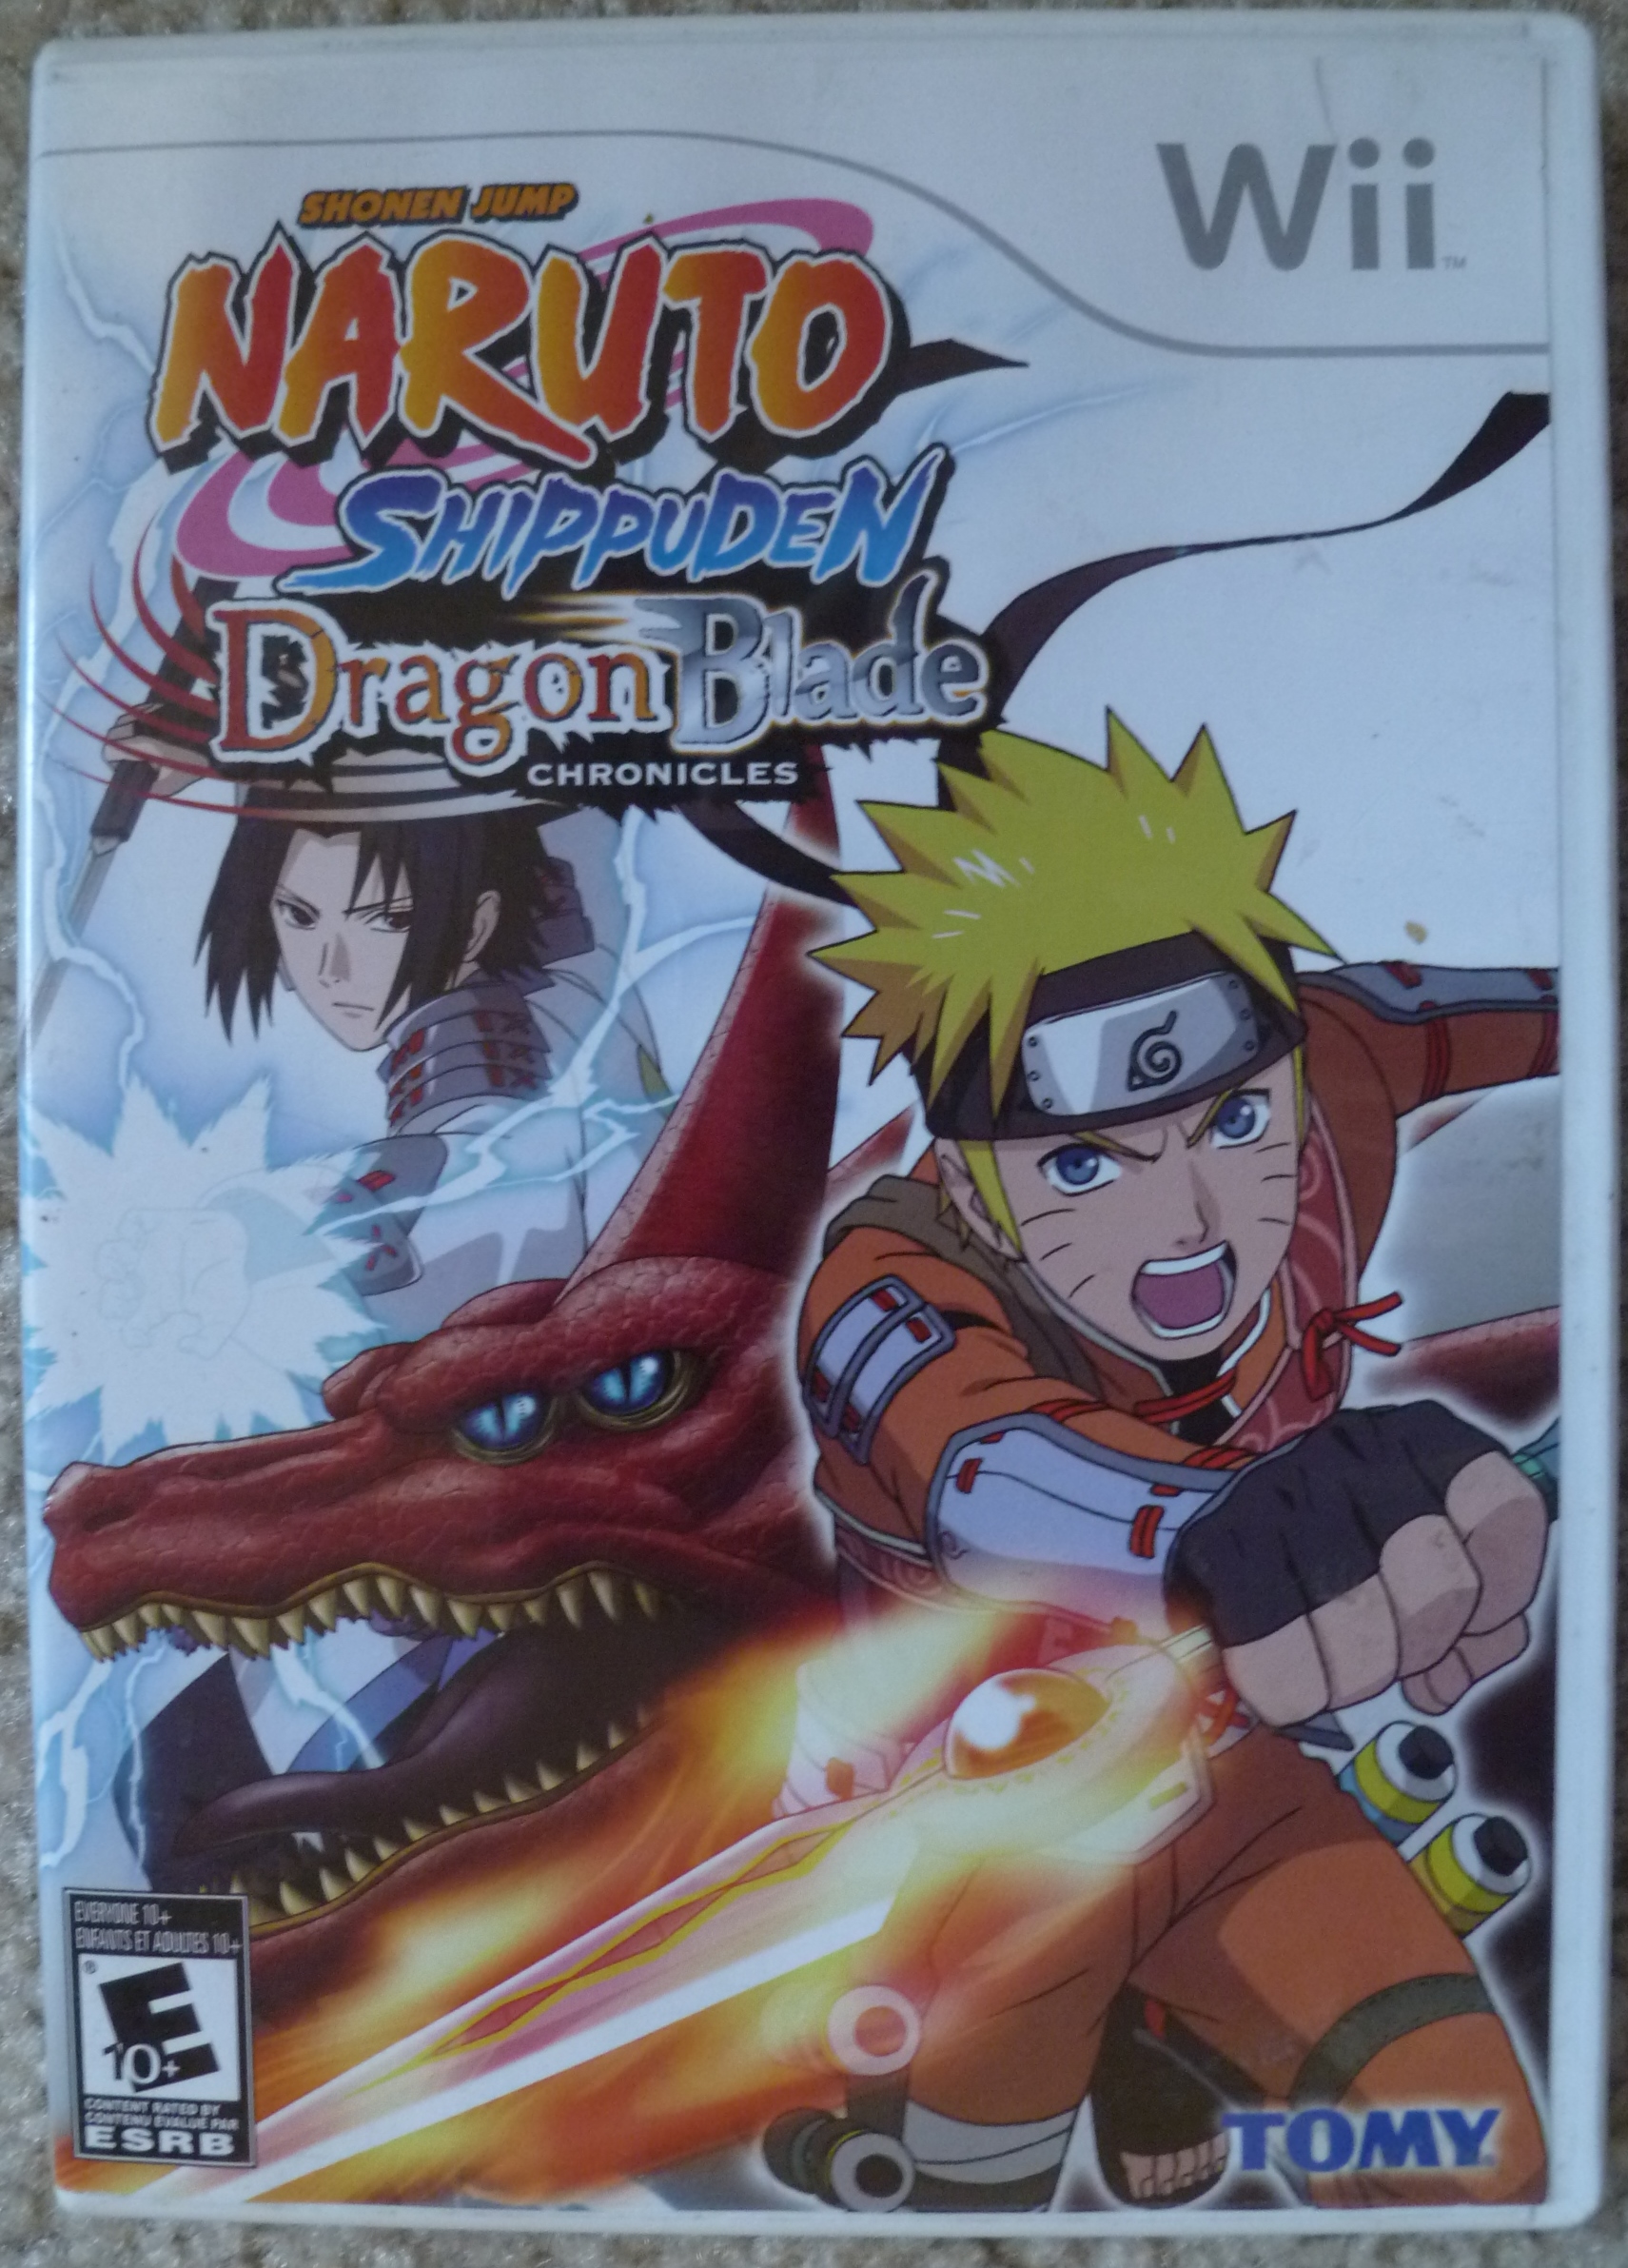 Naruto Shippuden Dragon Blade Chronicles Cover